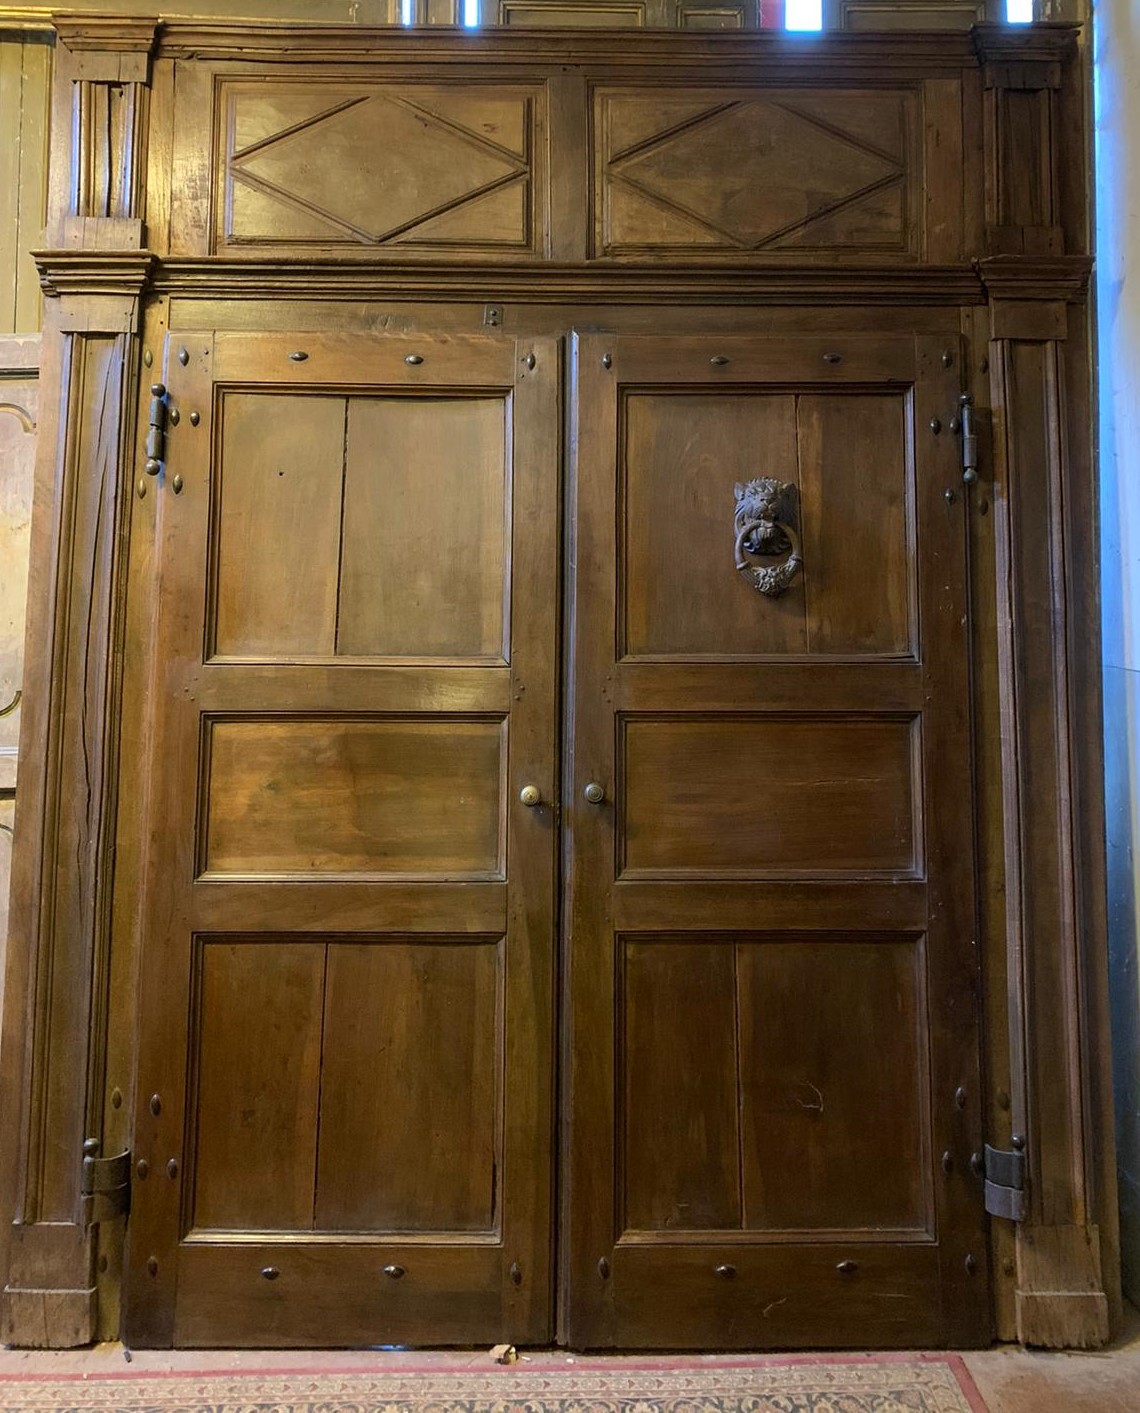 ptn246 - walnut door complete with its portal, cm w 256 x h 311